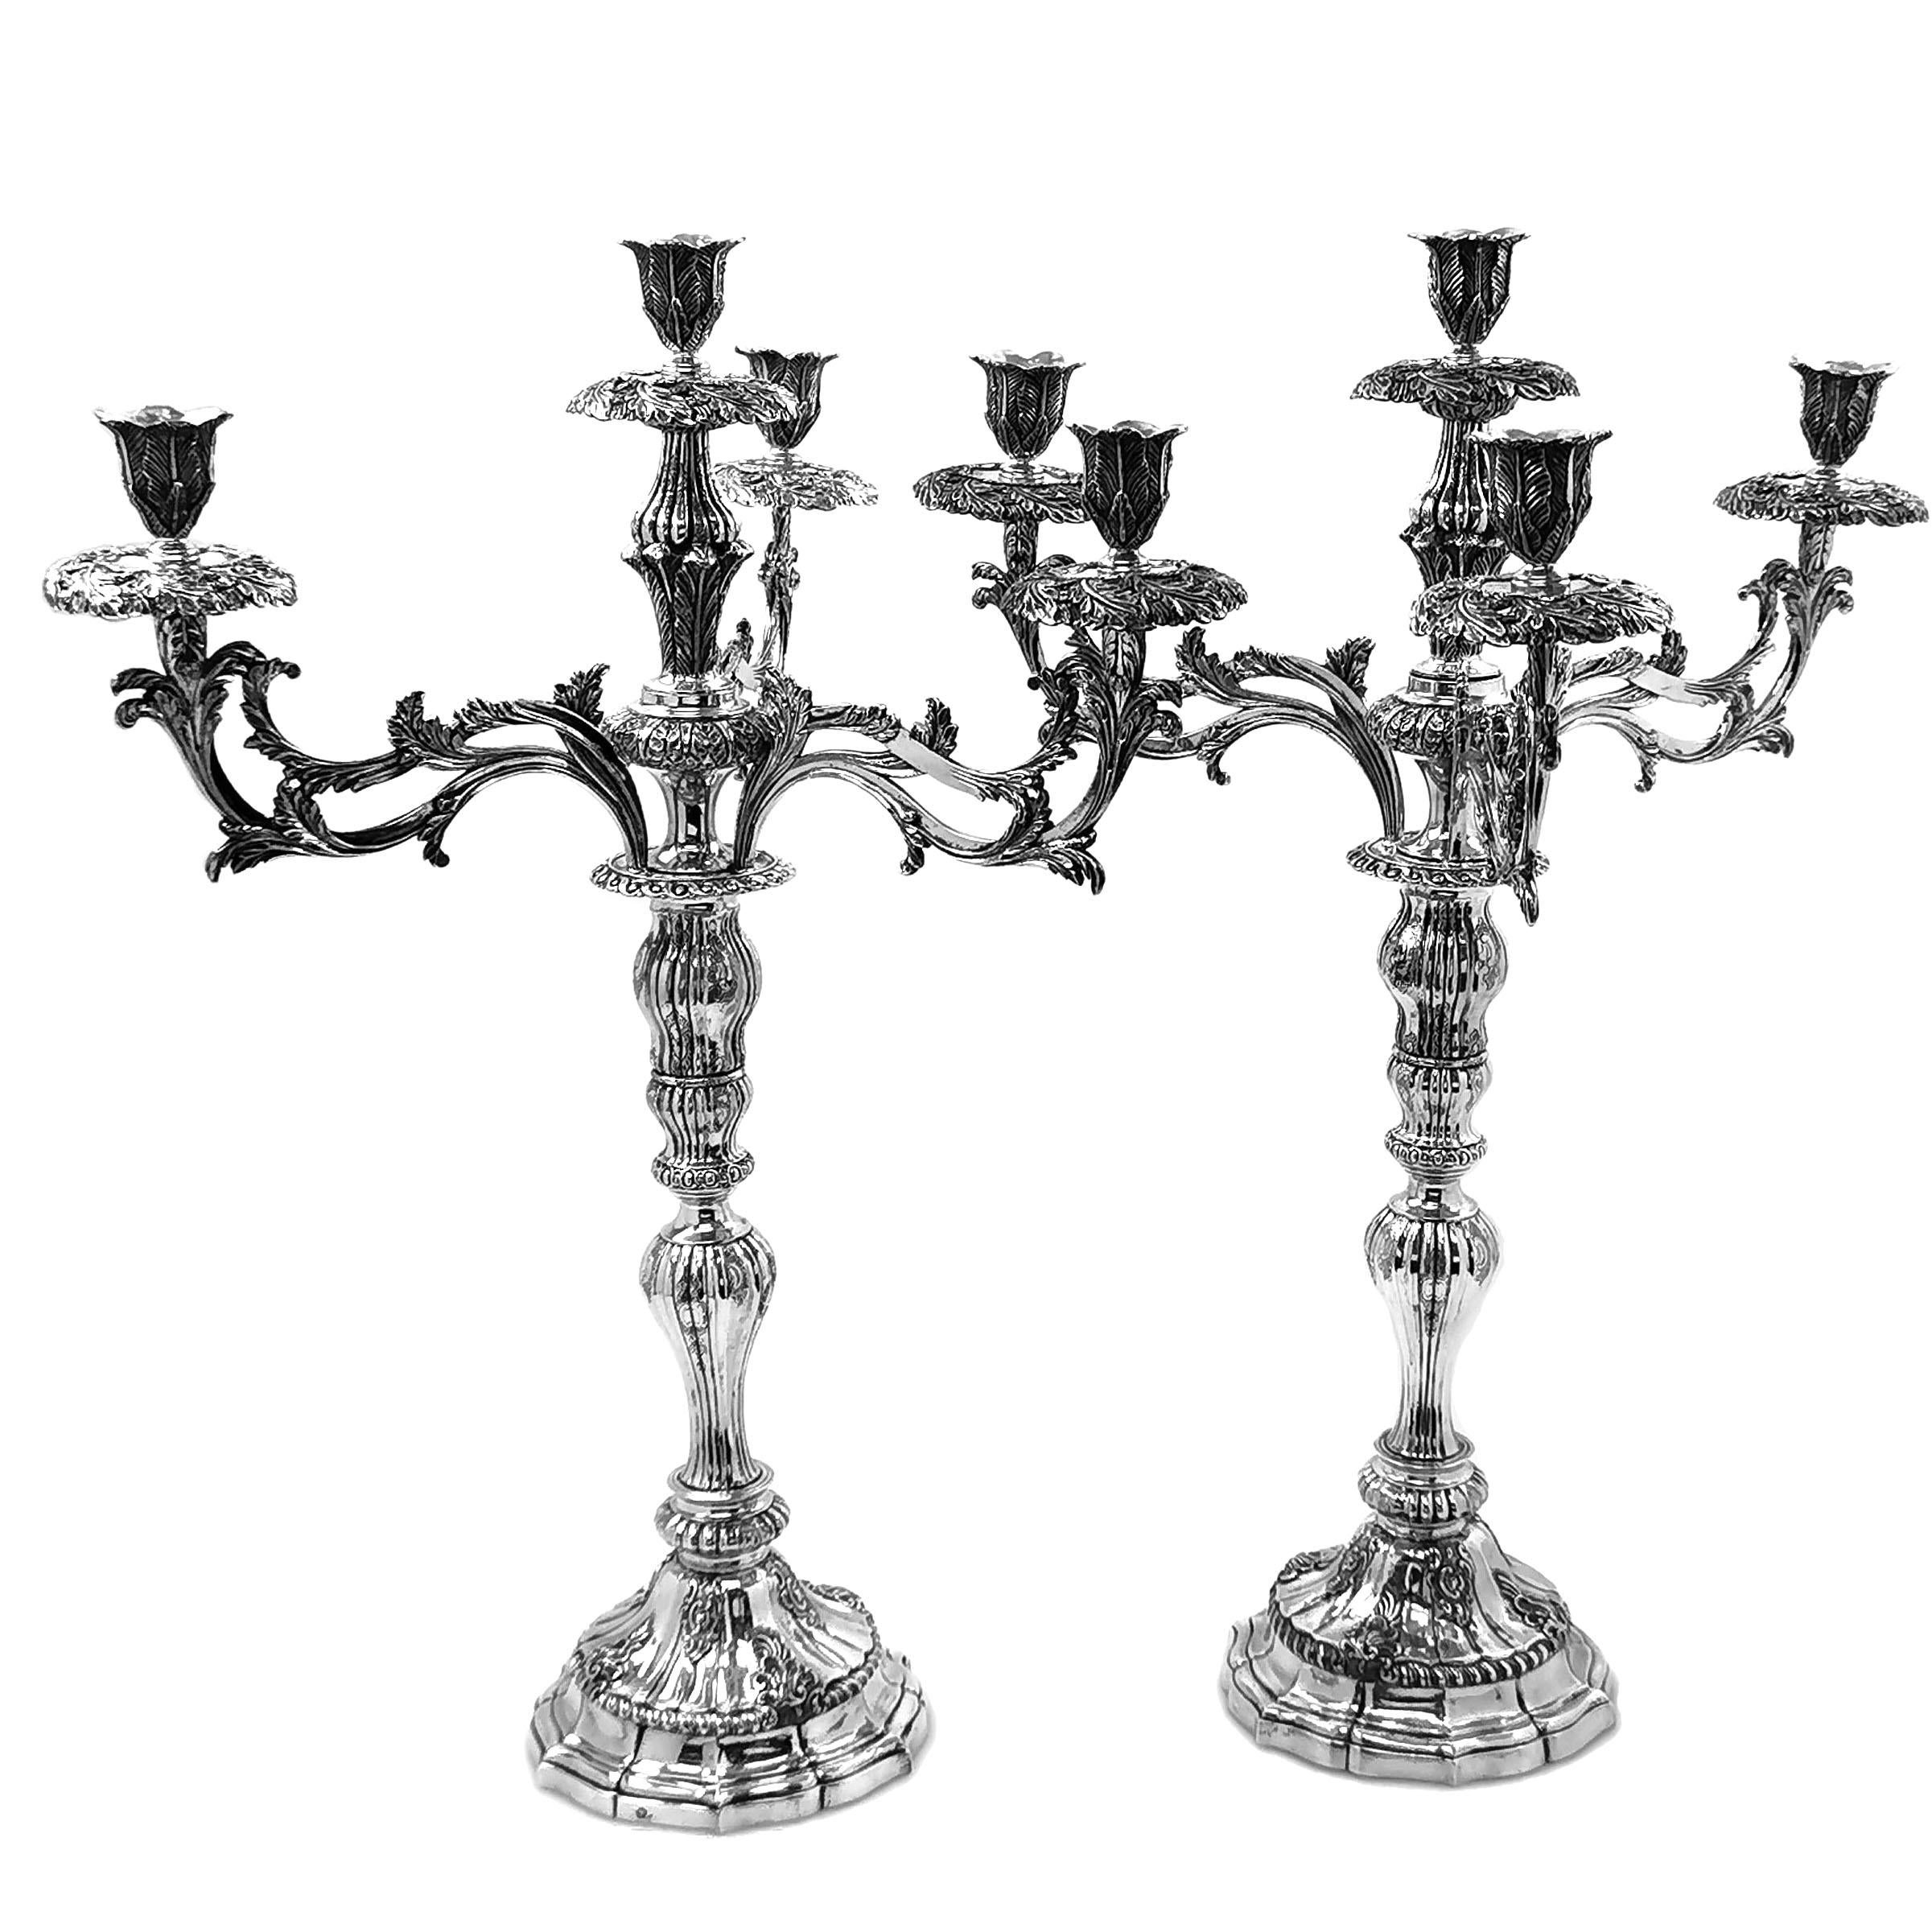 Une rare et magnifique paire de chandeliers portugais en argent massif du 18e siècle avec des appliques à quatre lumières et des branches amovibles pour permettre une utilisation comme chandeliers simples. Les appliques et les lèchefrites sont ornés